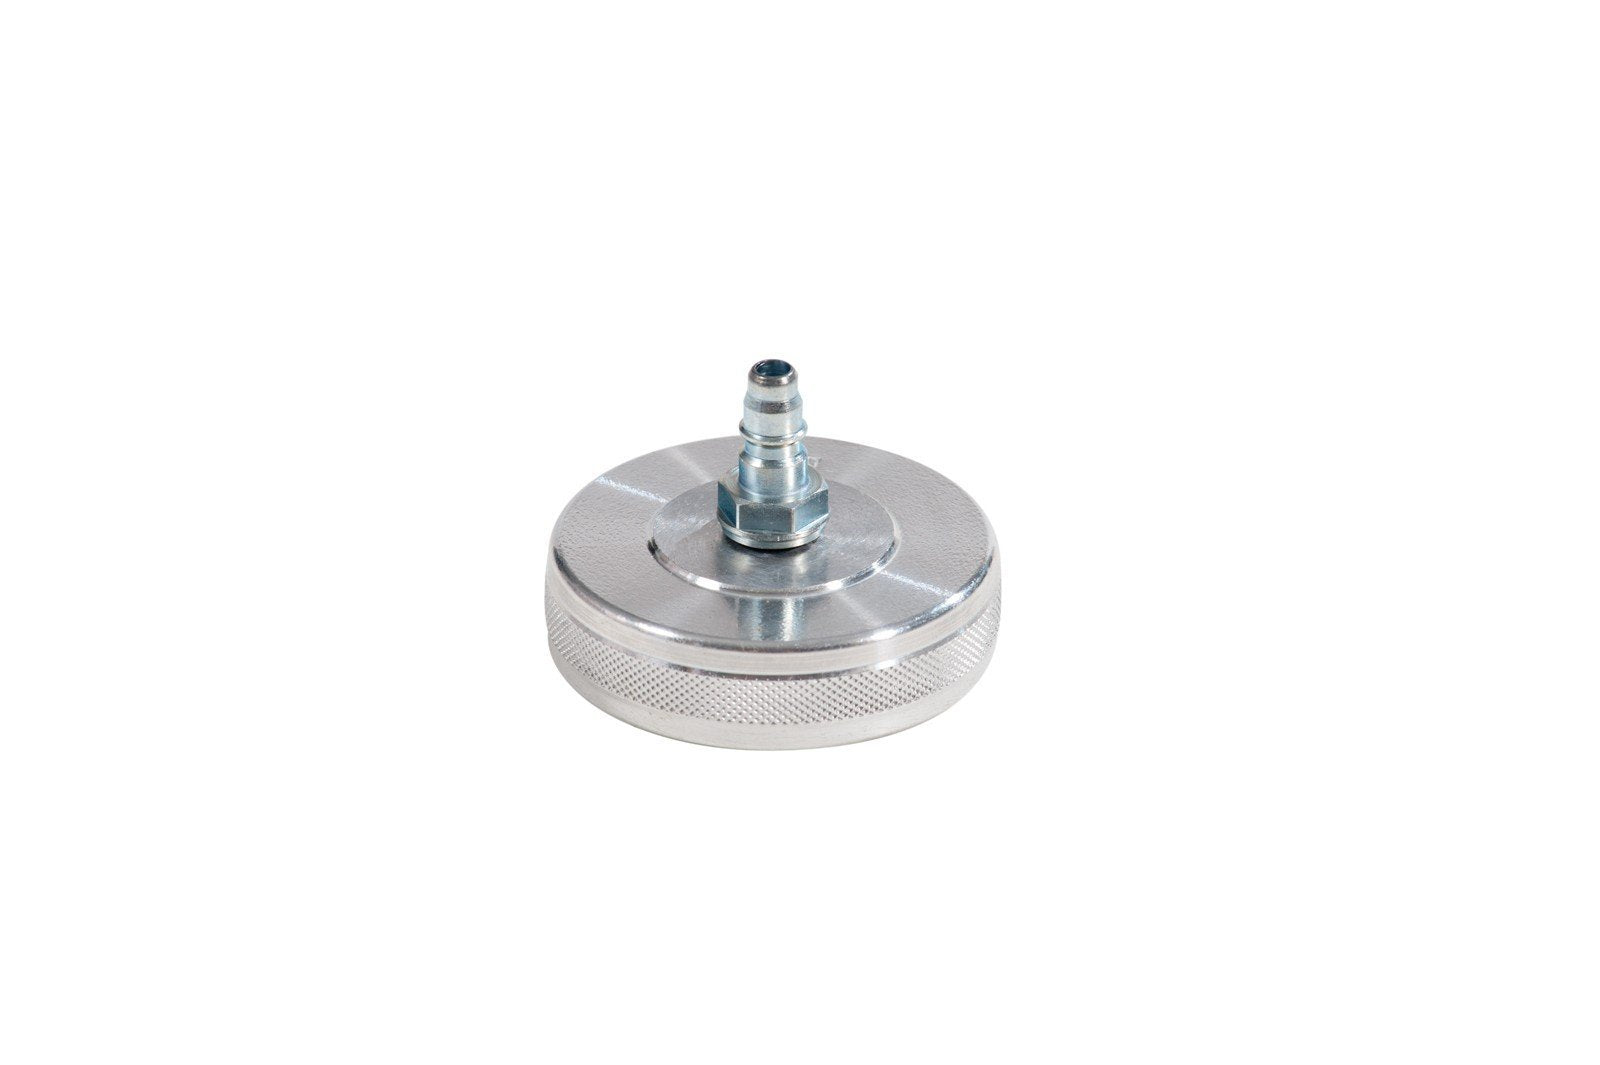 083-1805-000 - Screw plug model 5 diameter 48